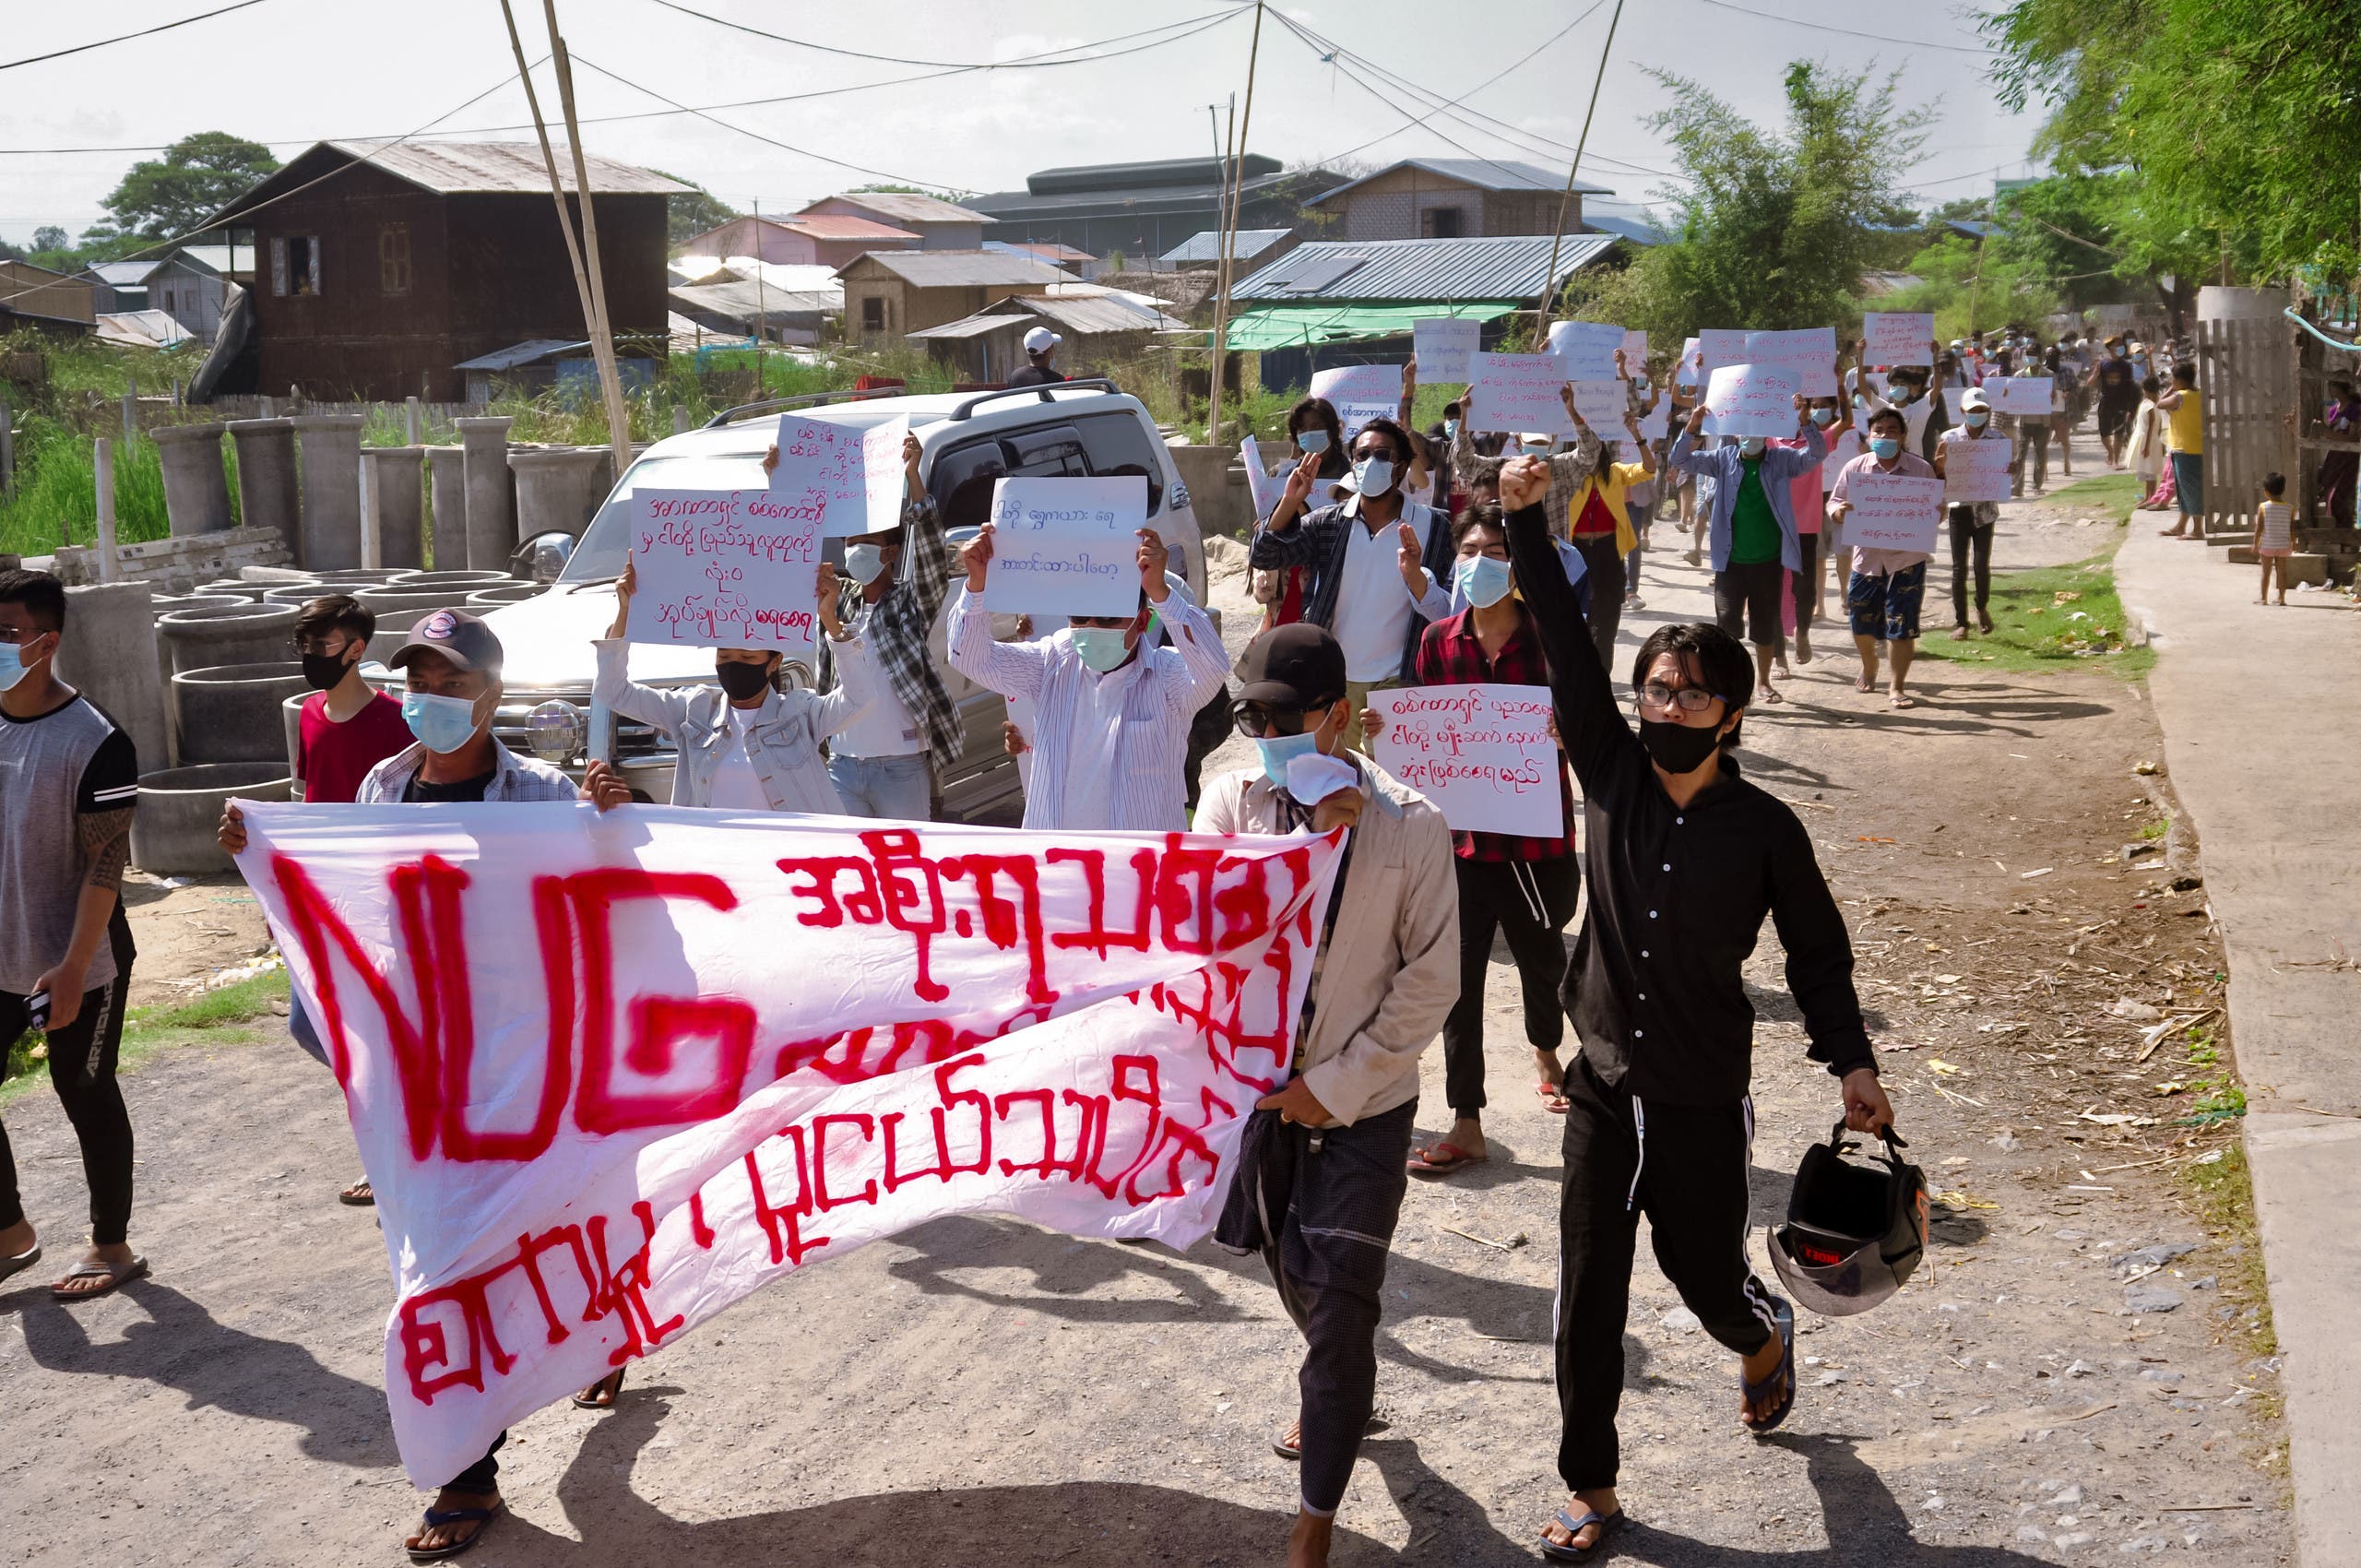 احتجاجات ضد الانقلاب العسكري السبت الماضي في مانالاي في ميانمار